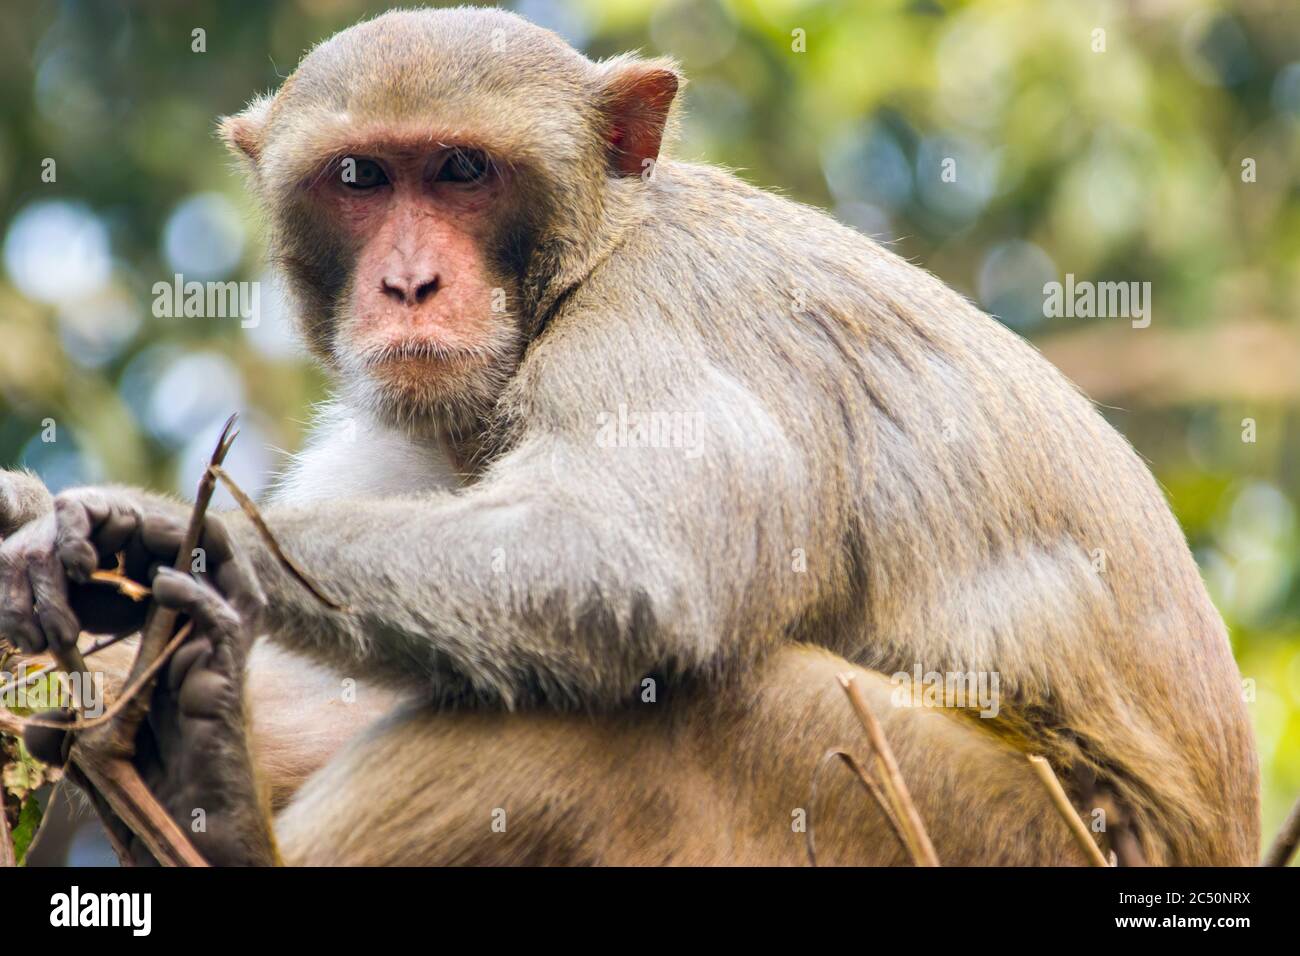 Un macaque rhésus sauvage (macaca mulatta) dans le zoo de Delhi se trouve sur les barres d'acier avec le visage nerveux. C'est l'une des espèces les plus connues du singe du Vieux monde Banque D'Images